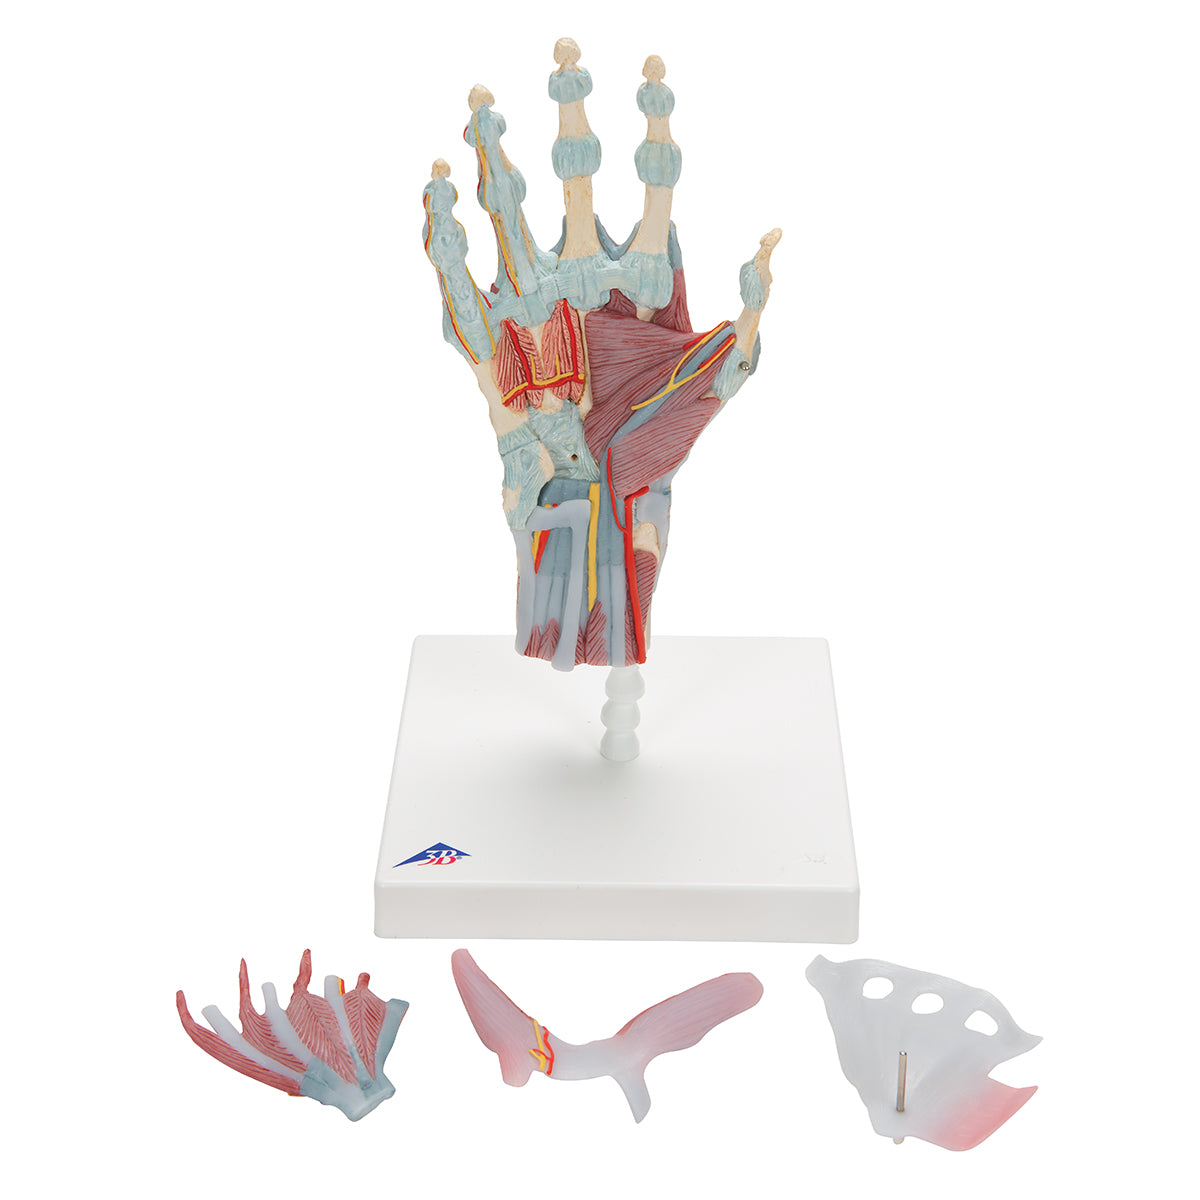 Komplet håndmodel med ledbånd, muskler, sener, kar og nerver - kan adskilles i 4 dele